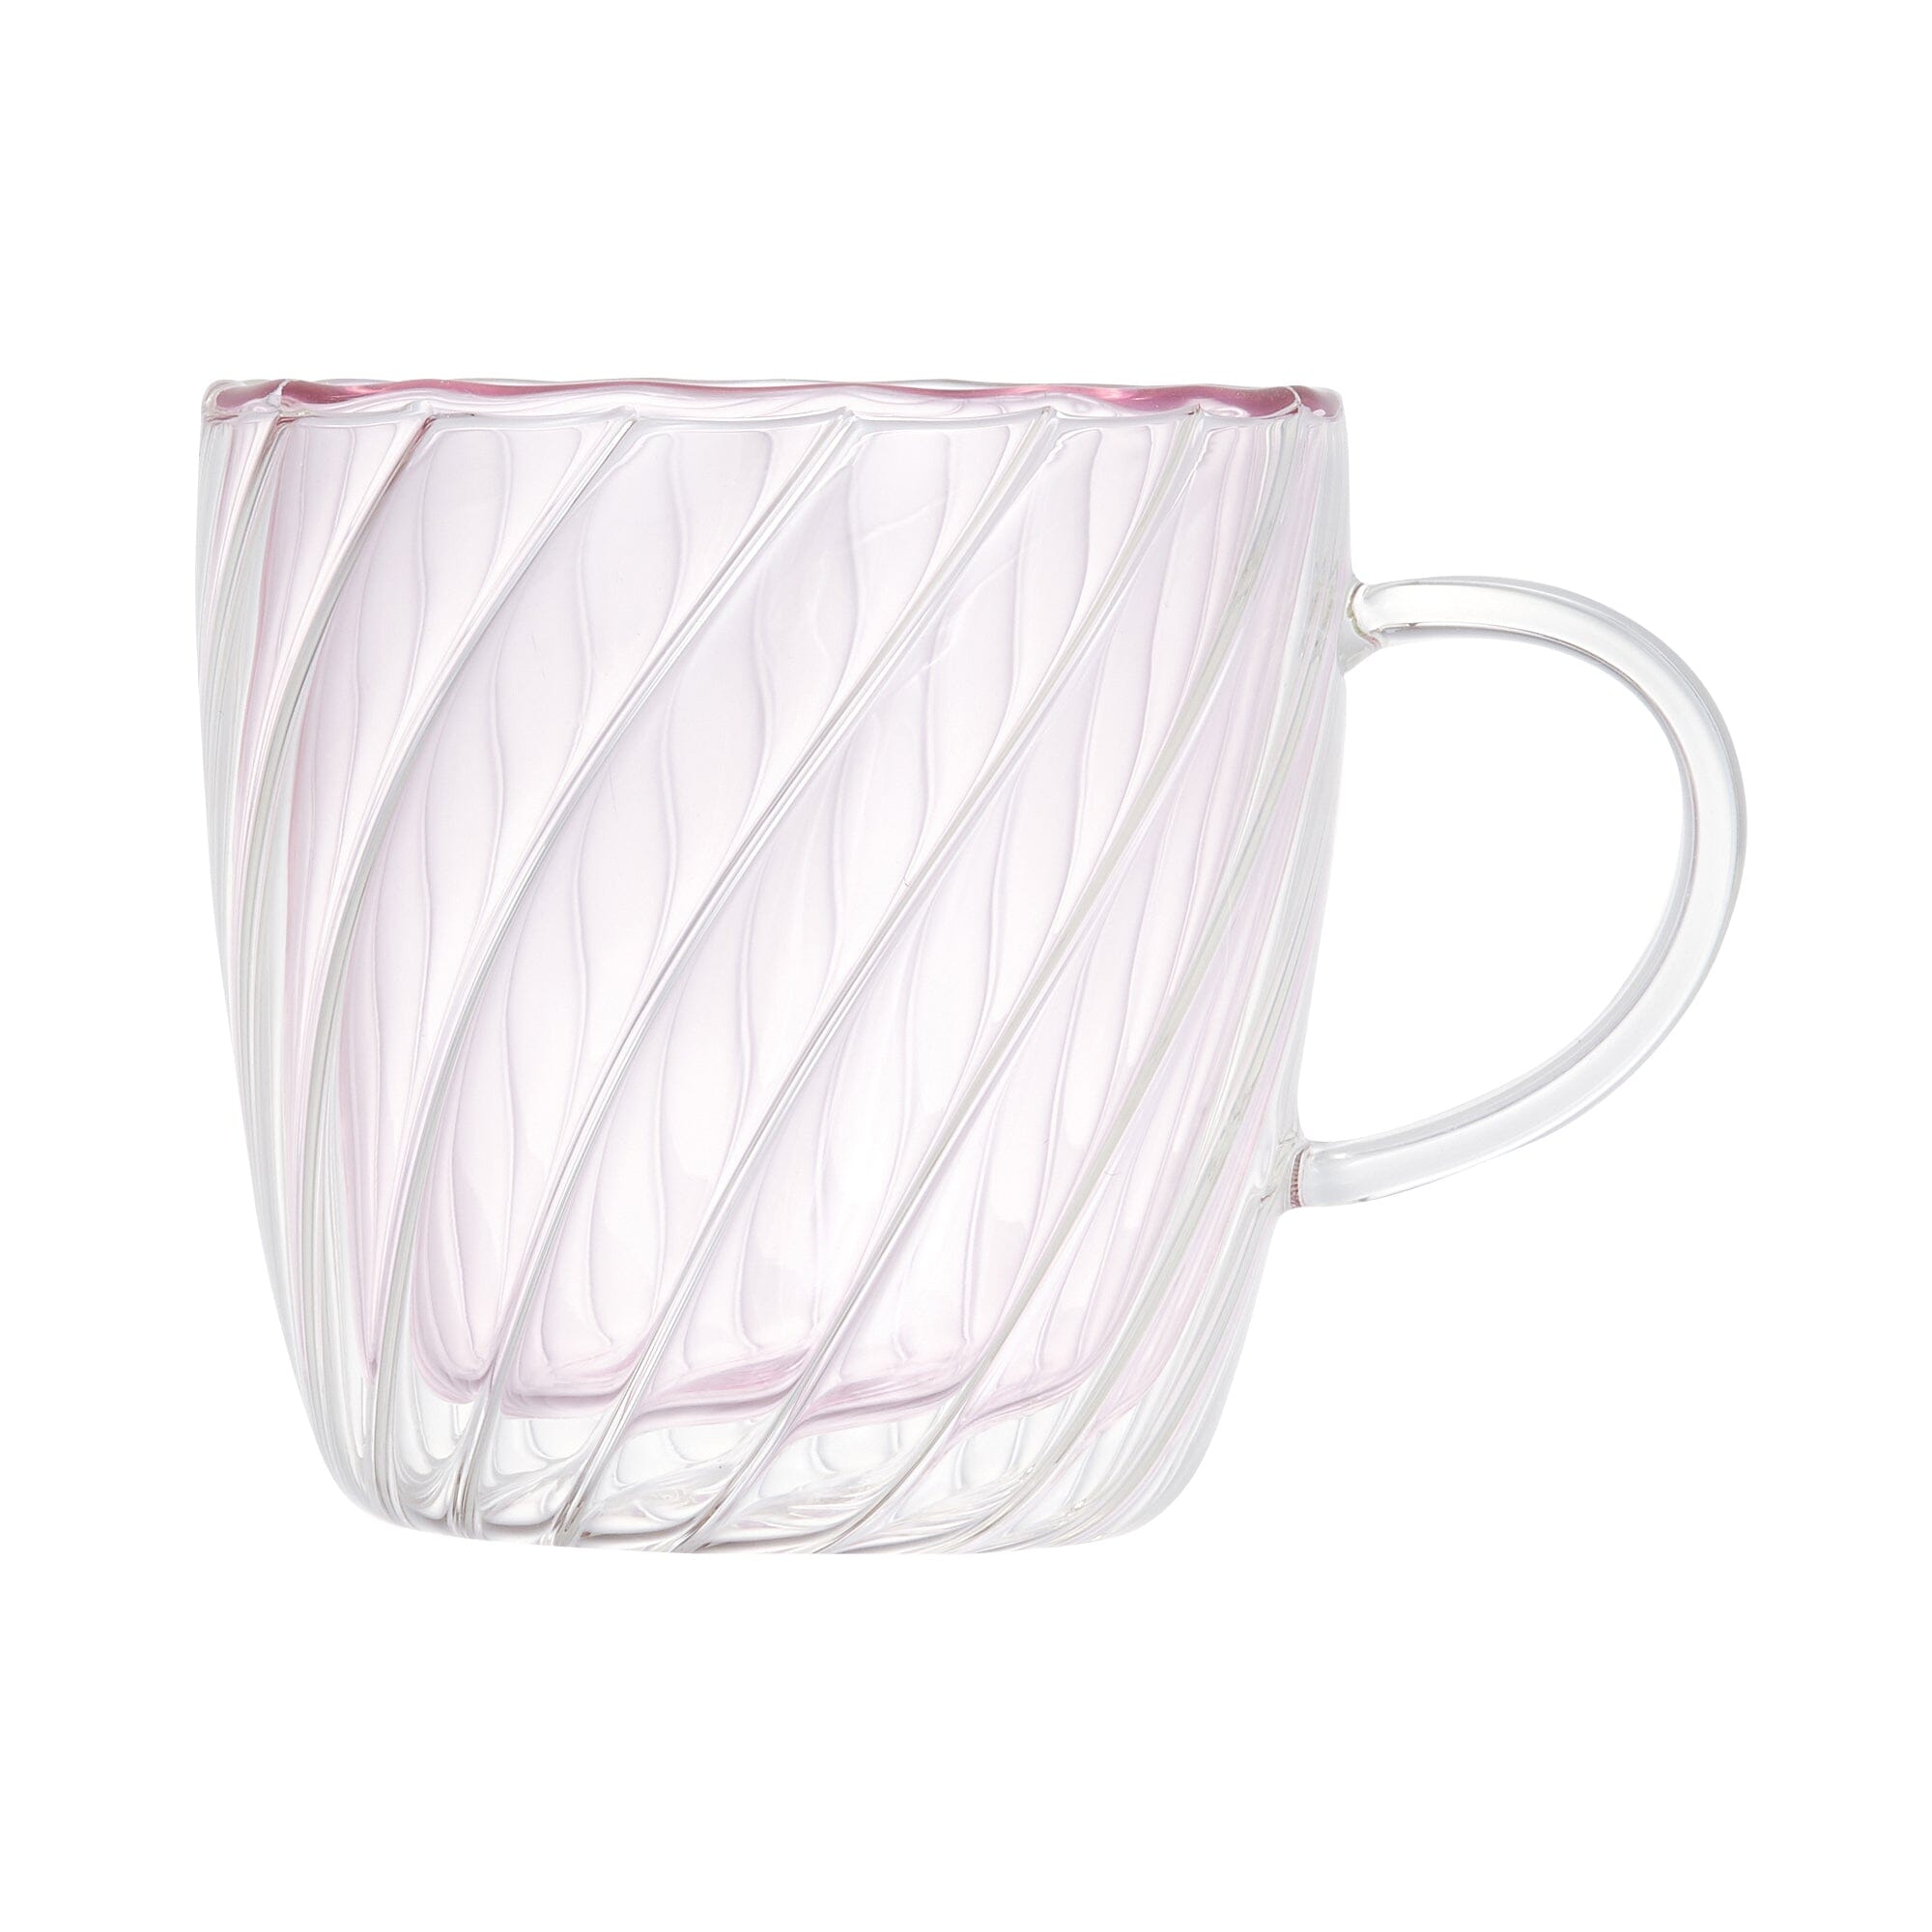 雙層玻璃杯連杯蓋 粉紅色